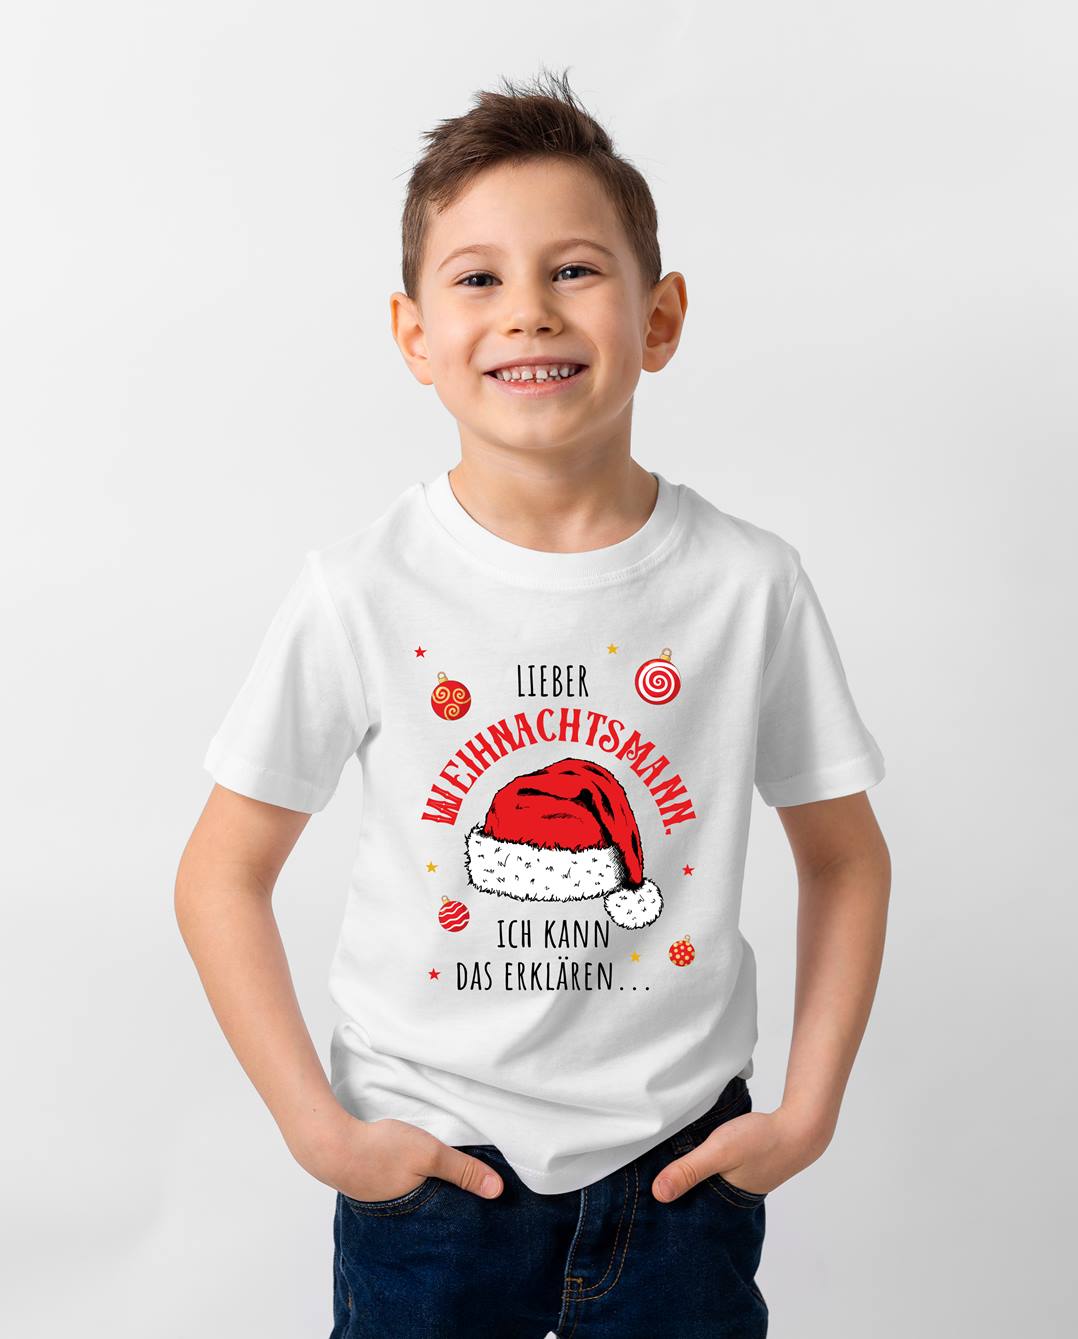 Bild: T-Shirt Kinder - Lieber Weihnachtsmann, ich kann das erklären... Geschenkidee